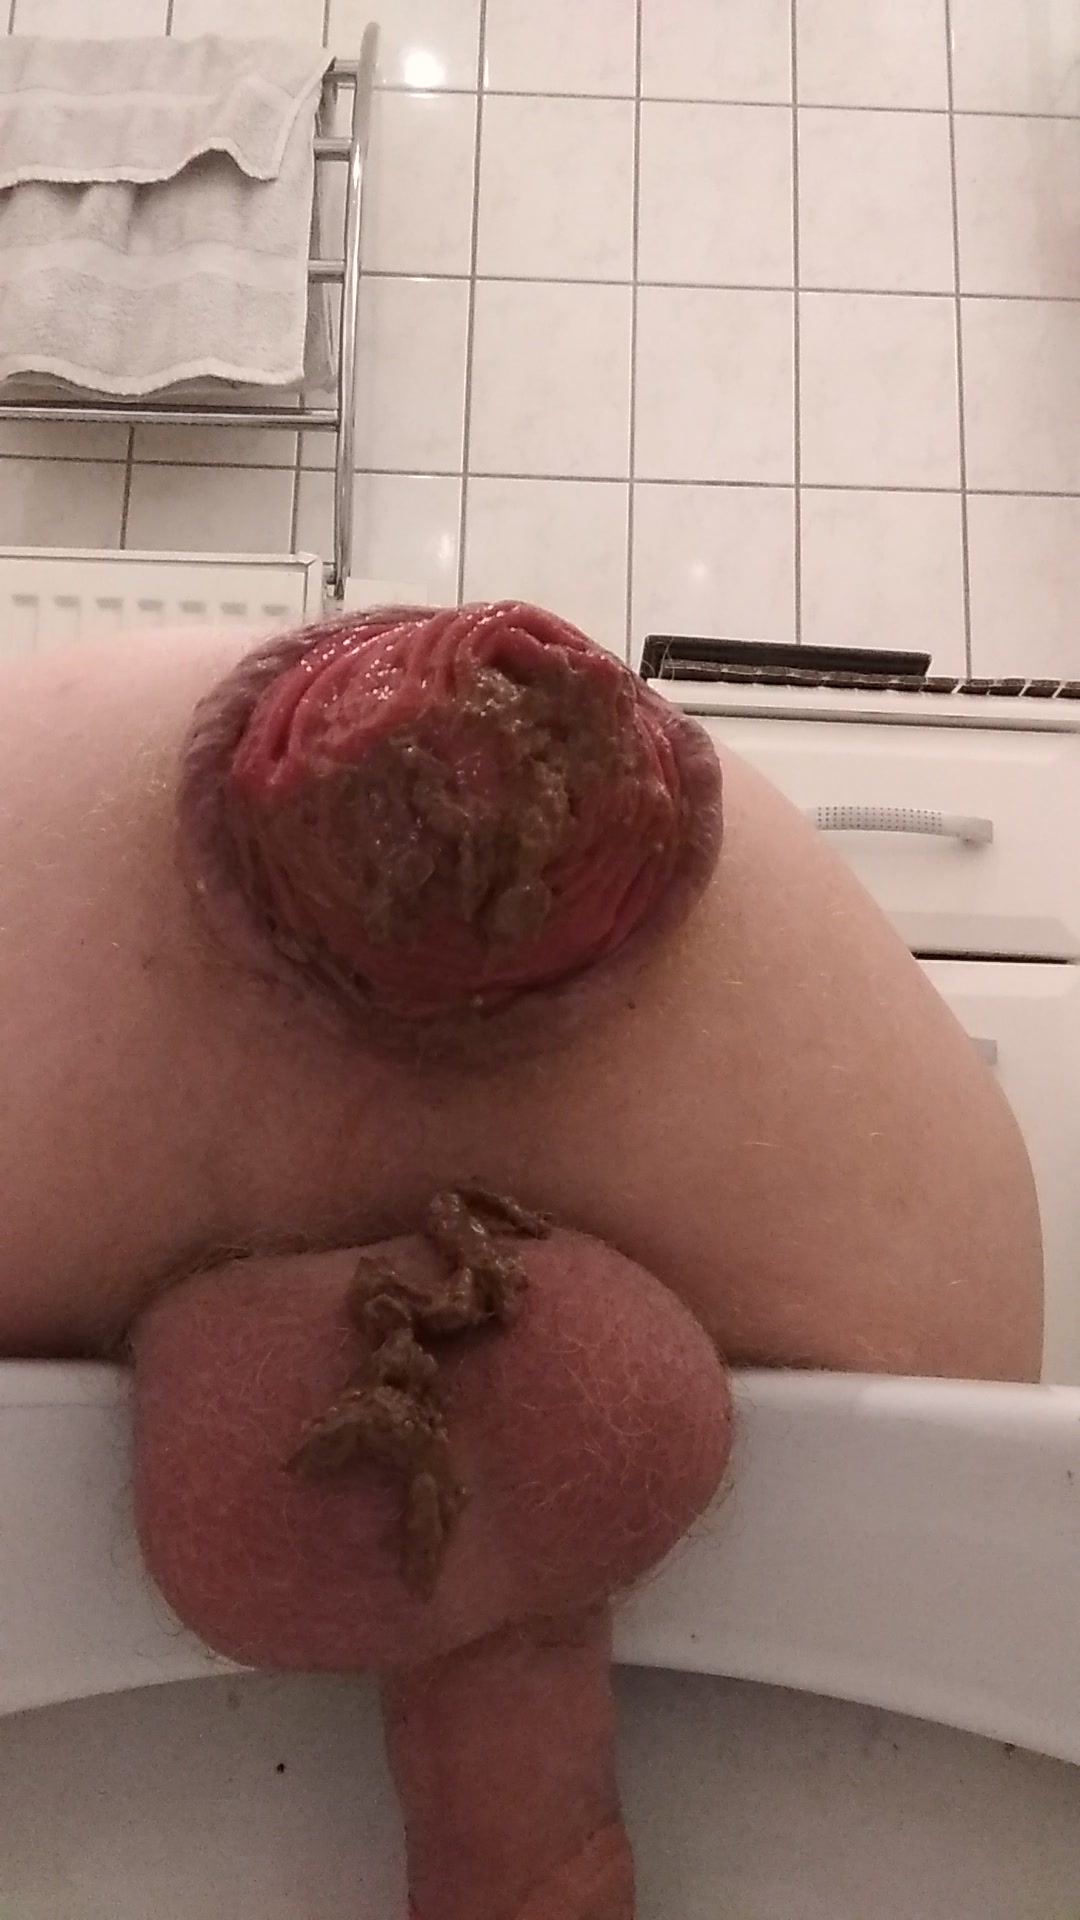 Rosebud Shit in toilet